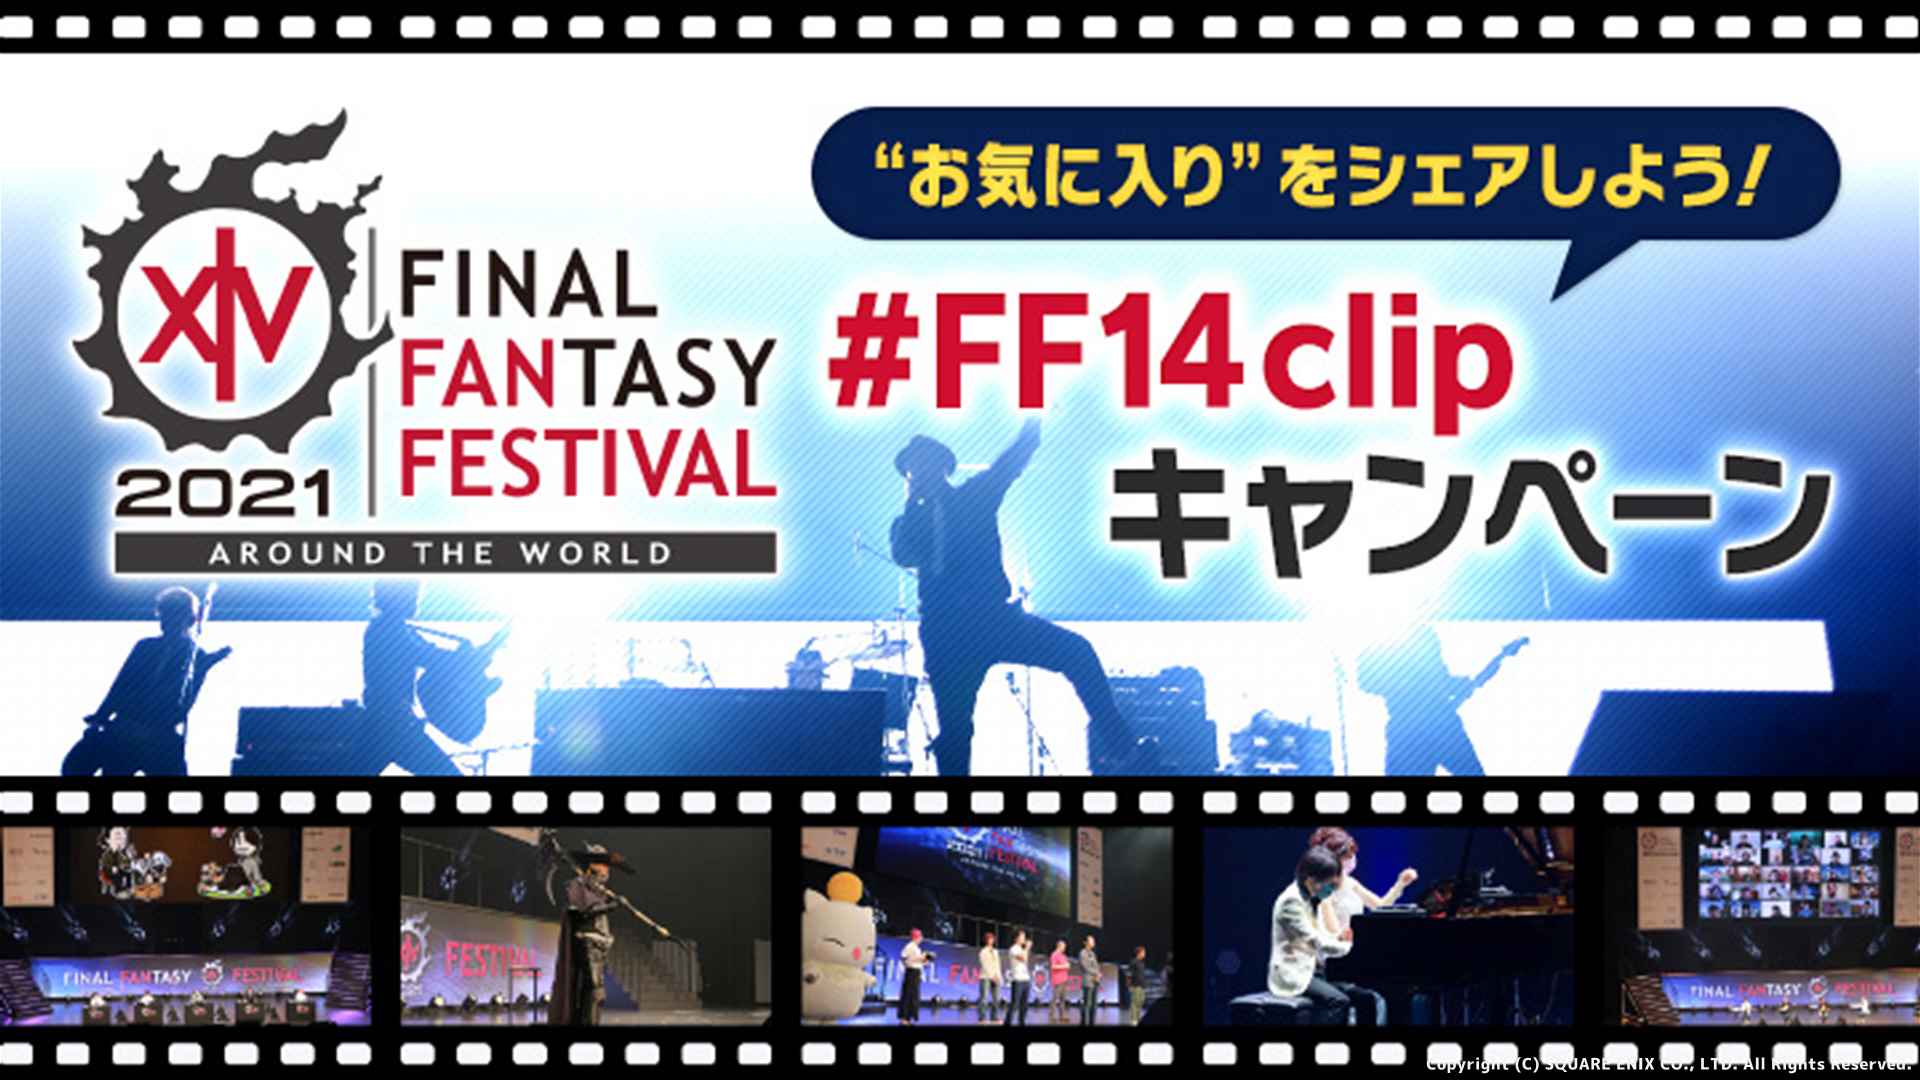 【FF14】デジタルファンフェスのお気に入りシーンをシェアするFF14Clip キャンペーンが開催！